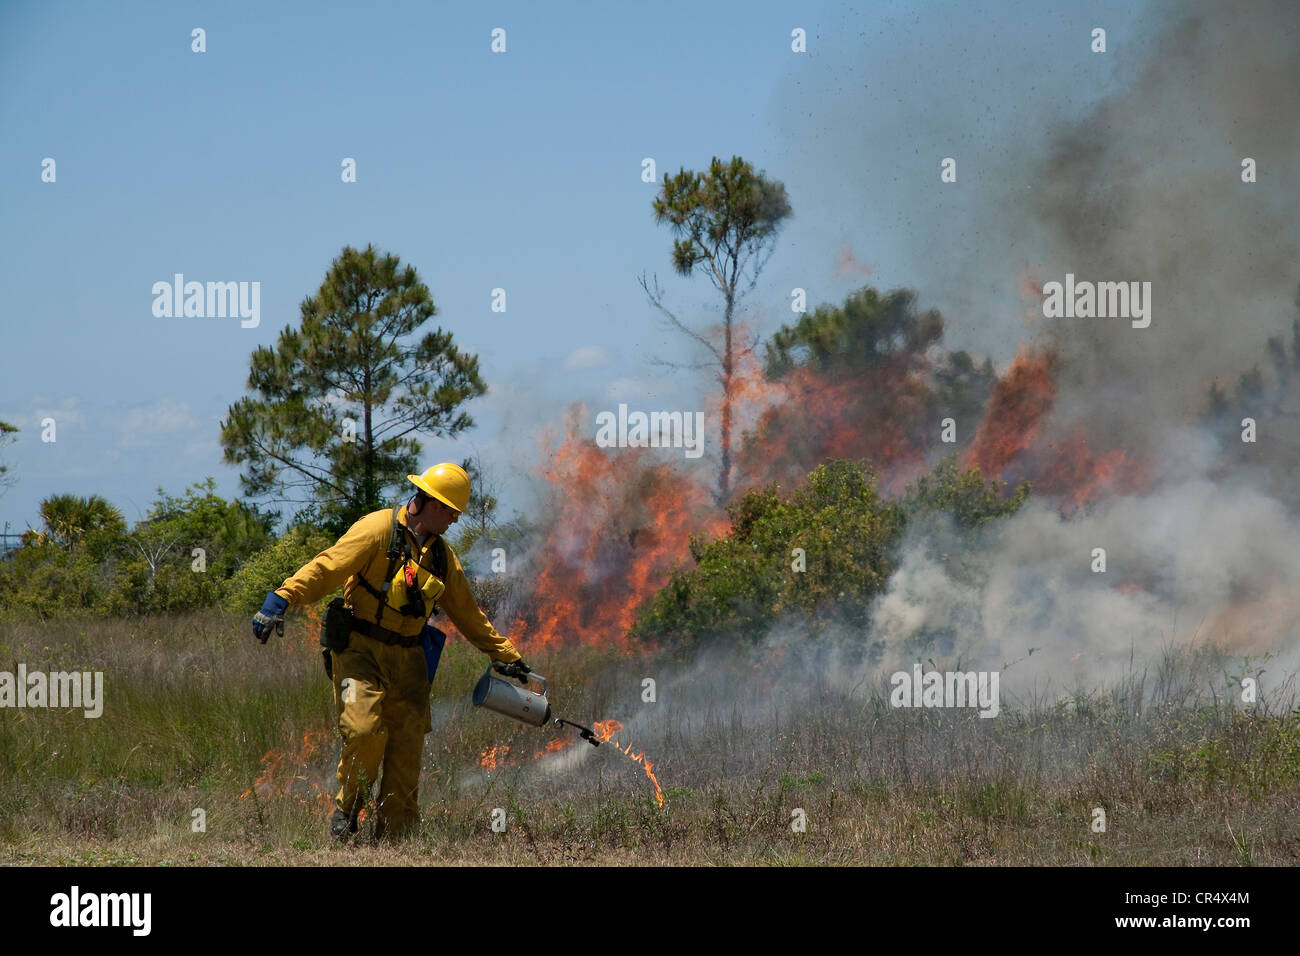 L'éclairage de forestier forêt de pin Pinus elliottii sur fire, brûlage dirigé, Florida USA Banque D'Images